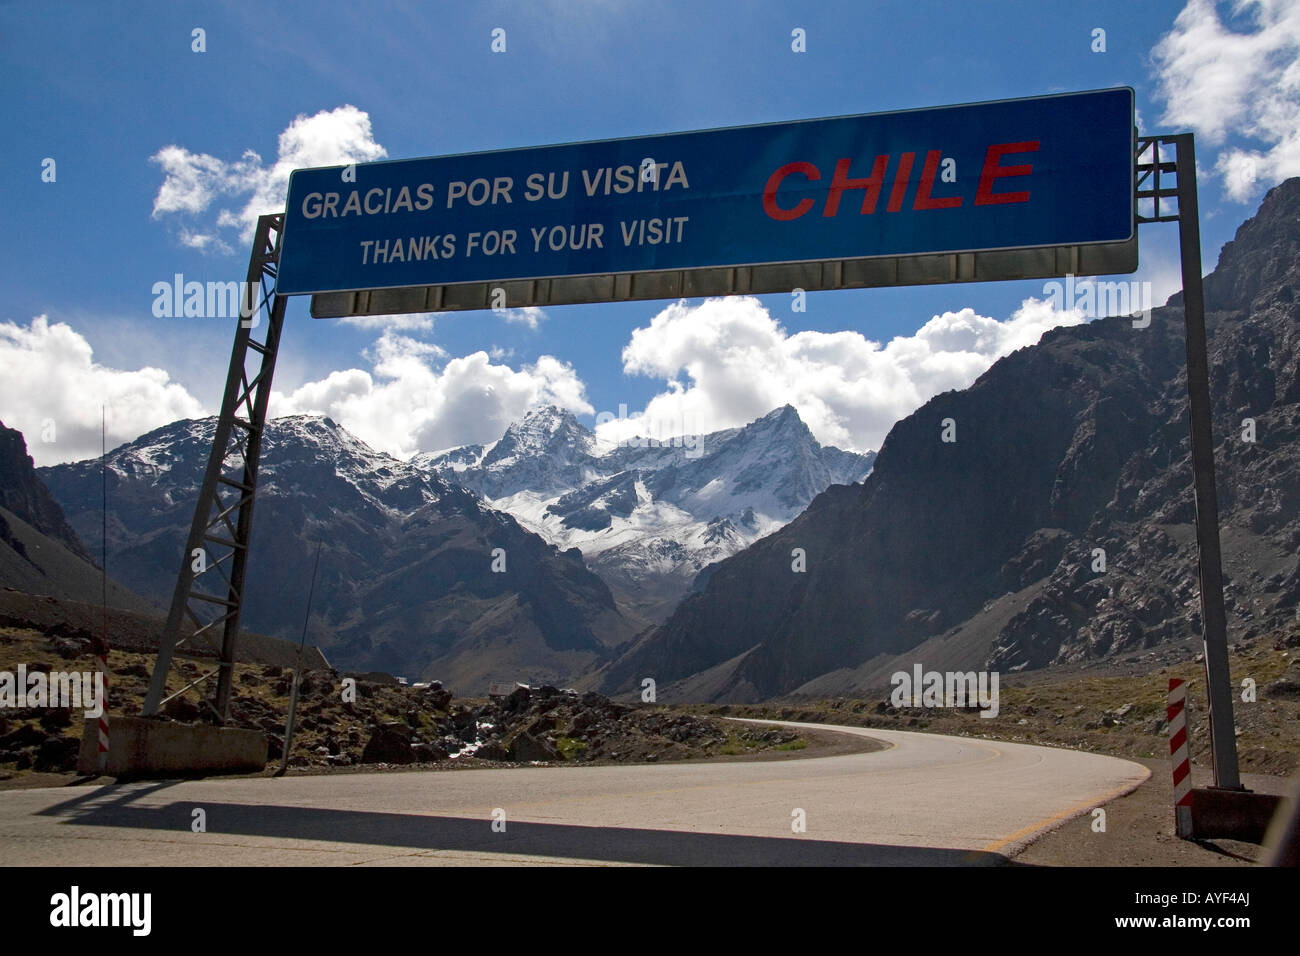 Spanische Sprache Straßenschild, ich danke Ihnen für einen Besuch an der Grenze zwischen Chile und Argentinien in der Gebirgskette der Anden in Chile Stockfoto